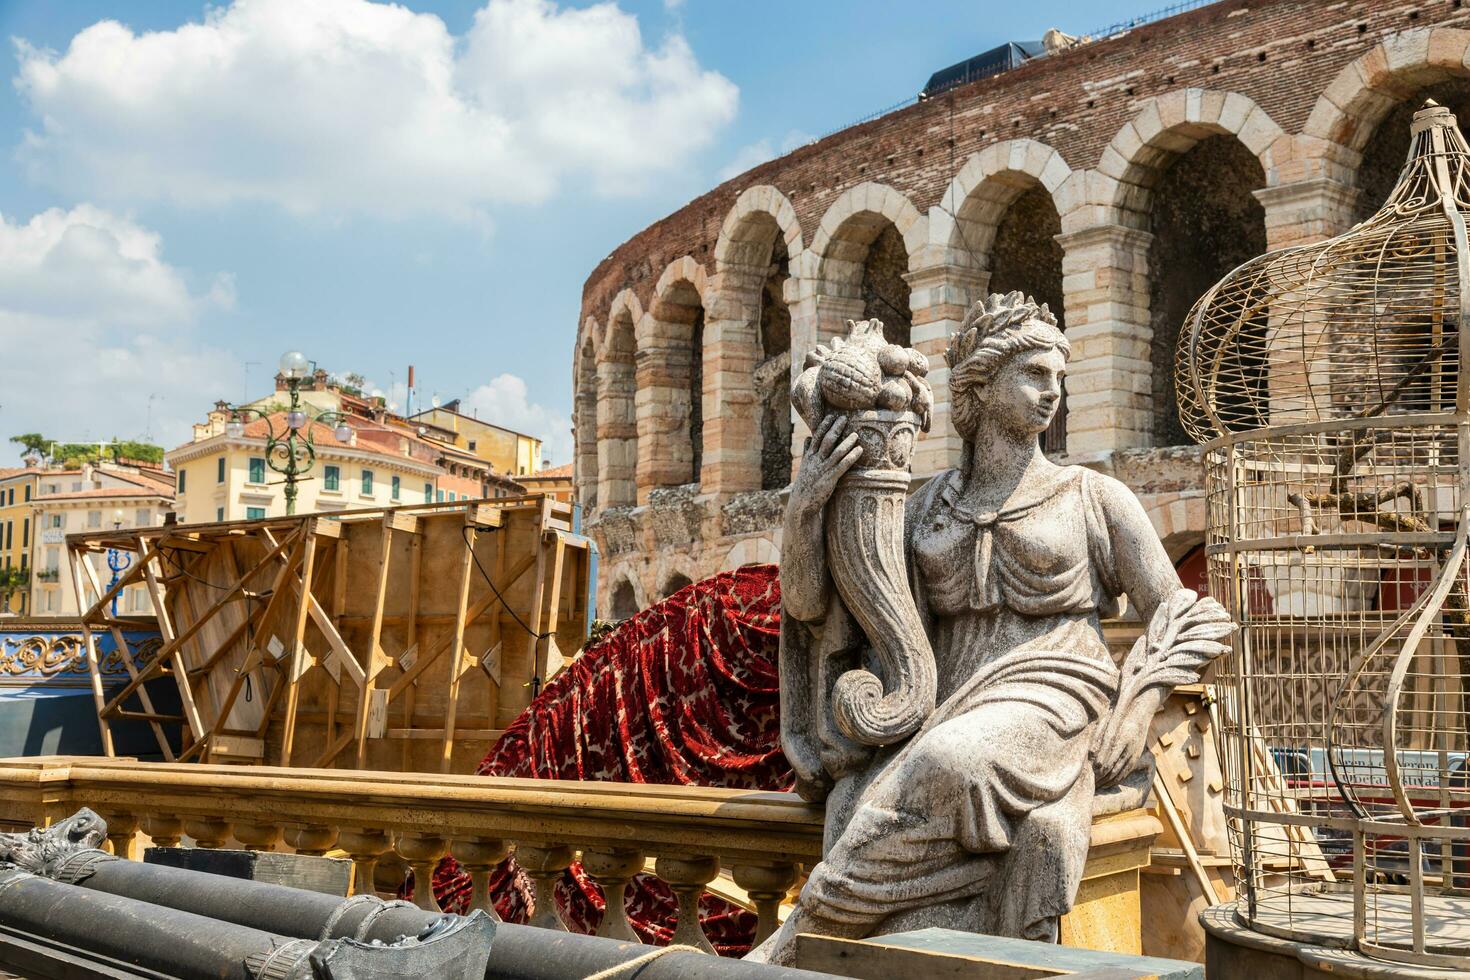 verona, italia - preparando el escenario para la representación teatral en la famosa arena di verona foto